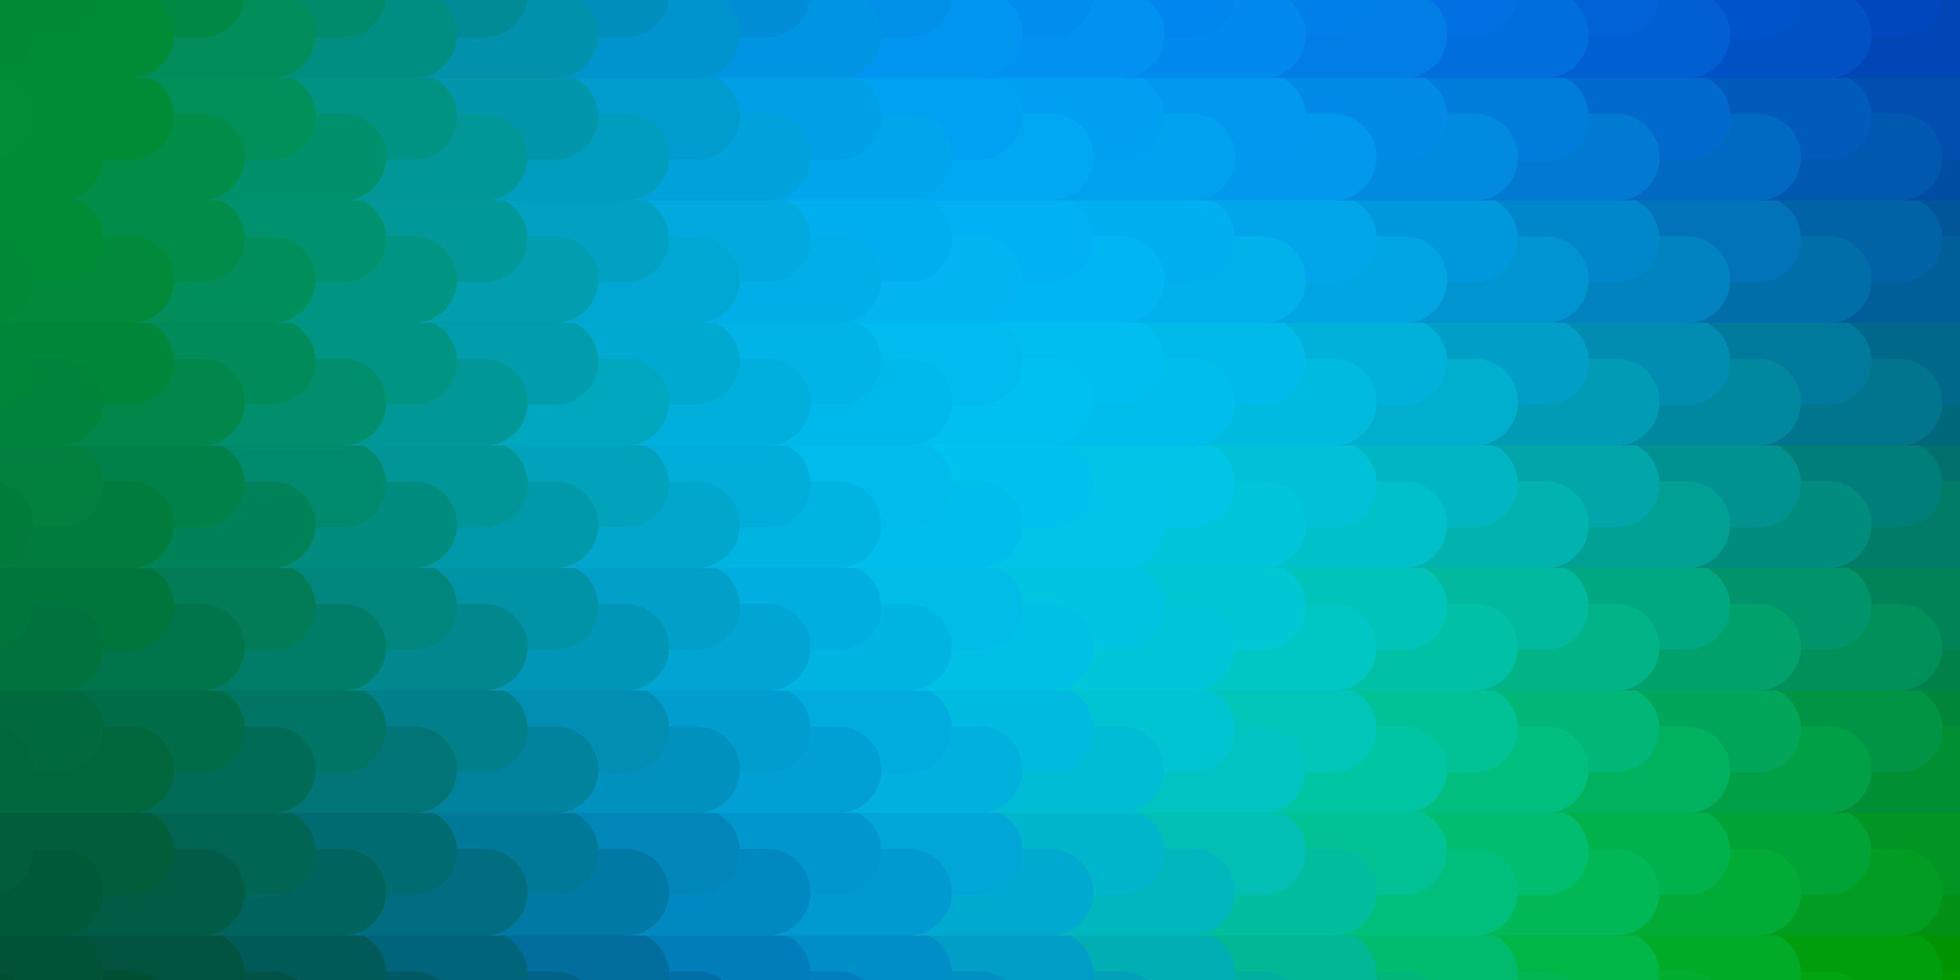 hellblaue, grüne Vektortextur mit Linien. abstraktes Design mit Farbverlauf im einfachen Stil mit scharfen Linien. Muster für Broschüren, Broschüren. vektor